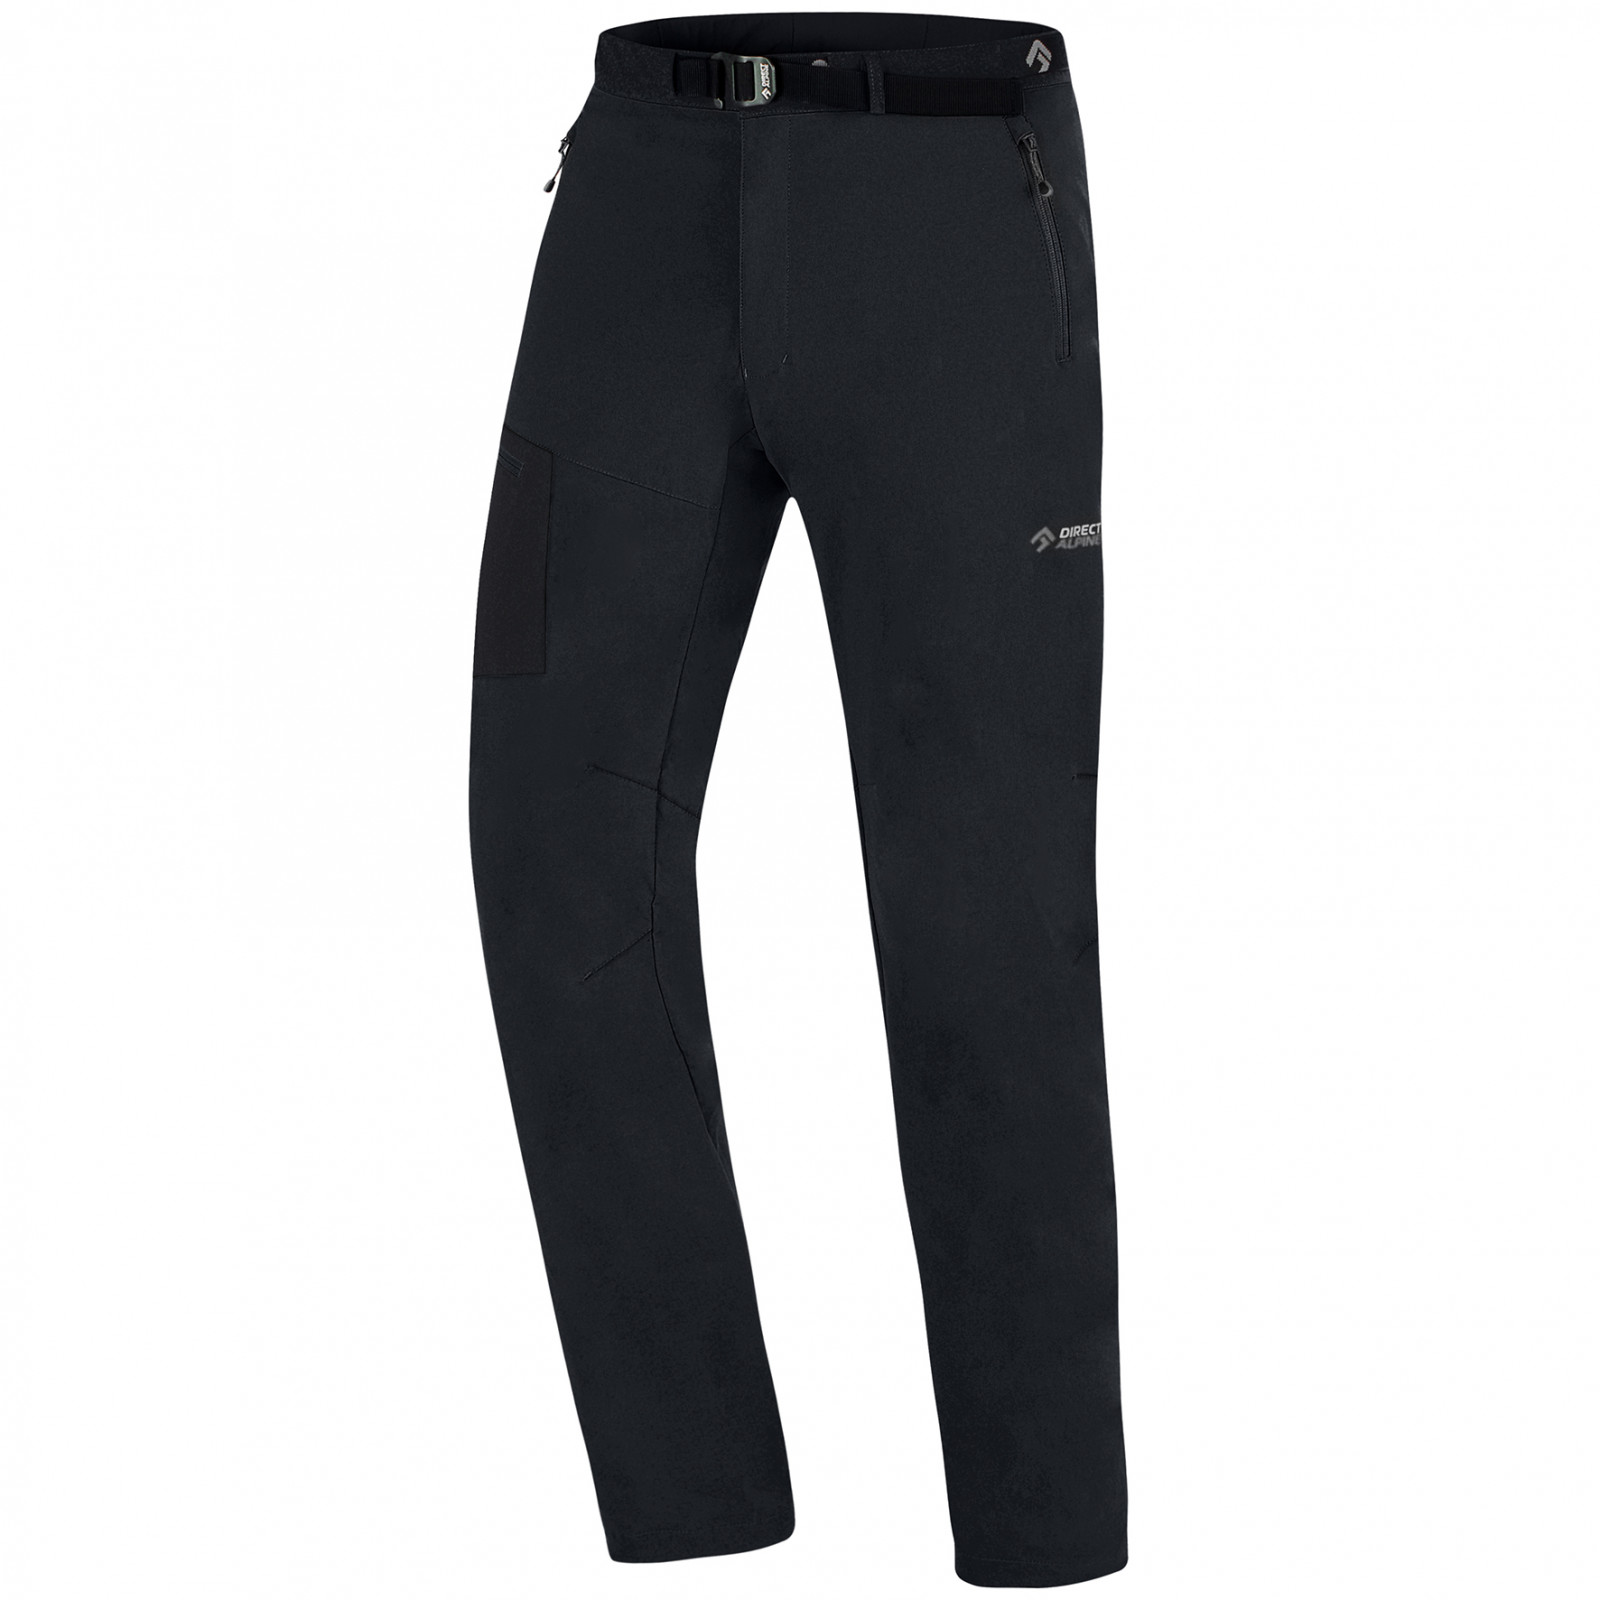 Pánské kalhoty Direct Alpine Cruise Velikost: L / Délka kalhot: regular / Barva: černá